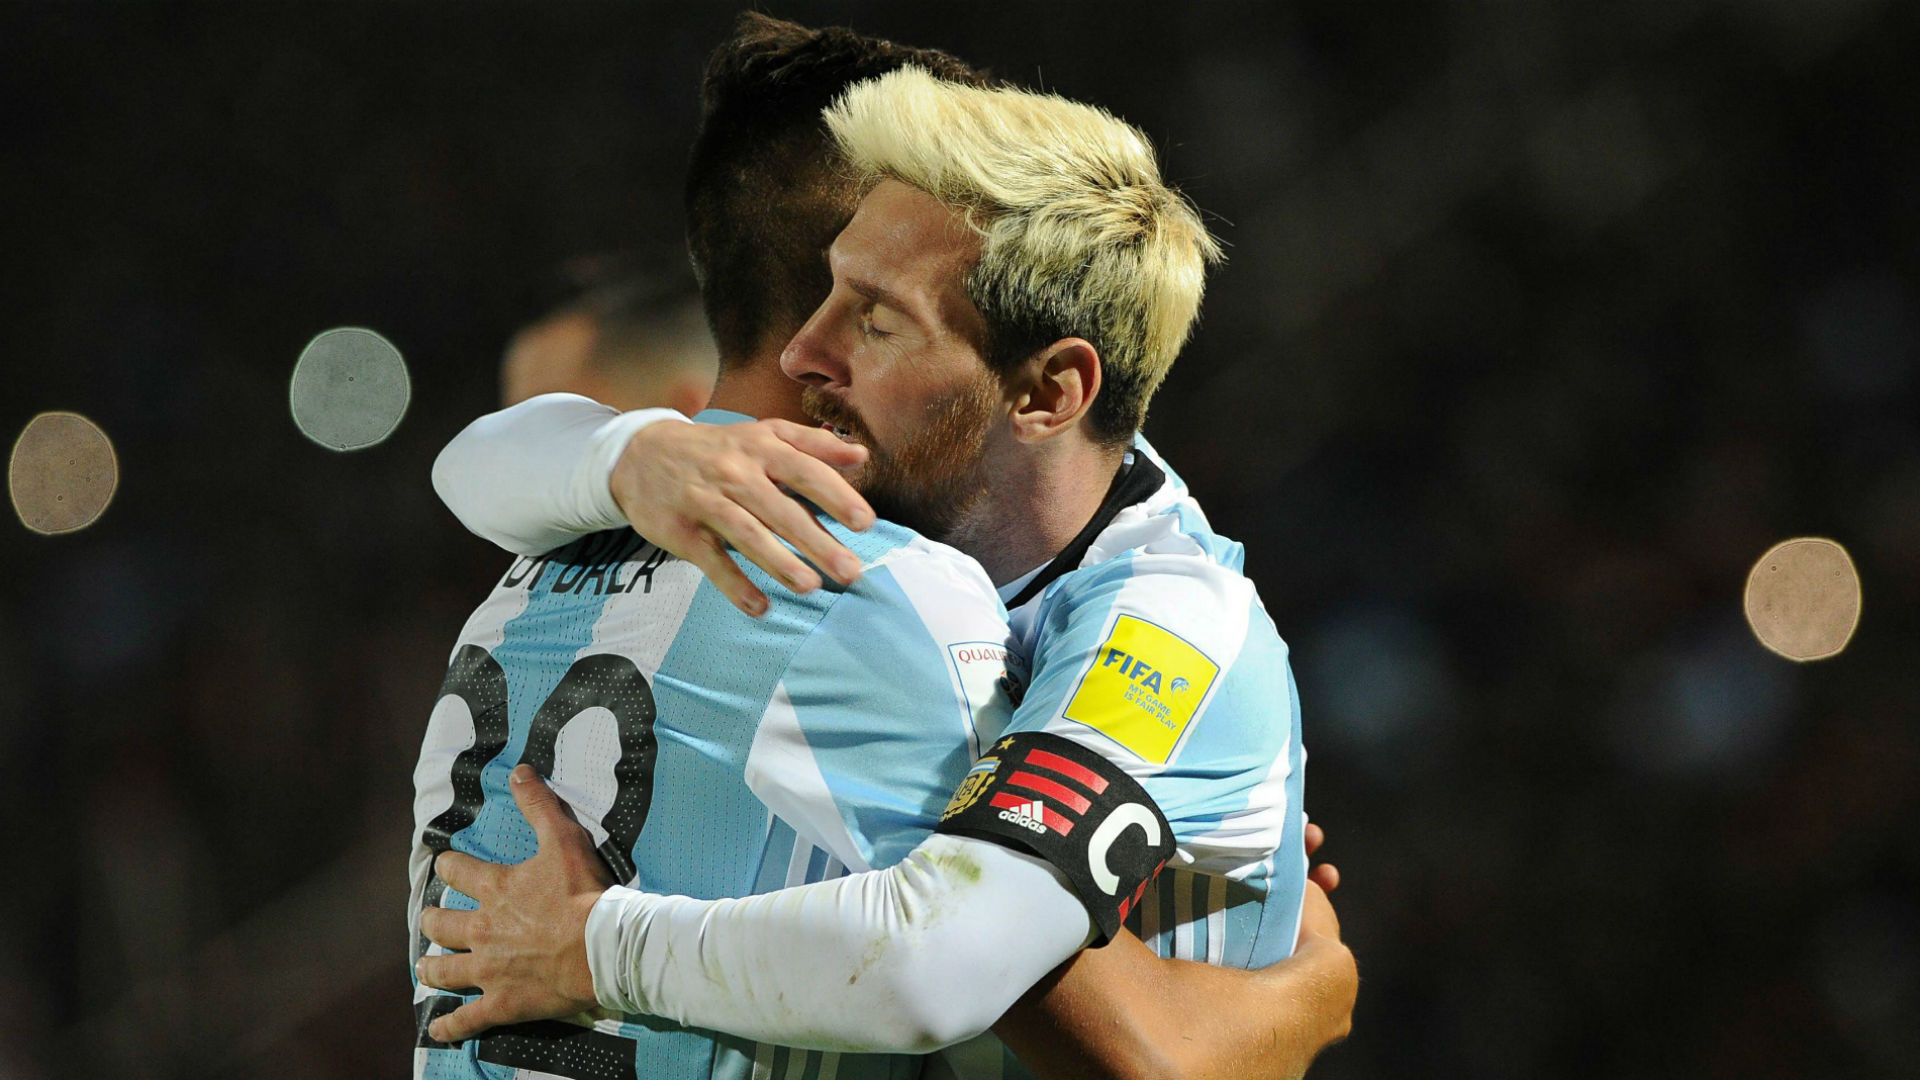 Vì Messi, Dybala có thể sẽ dự bị - Bóng Đá